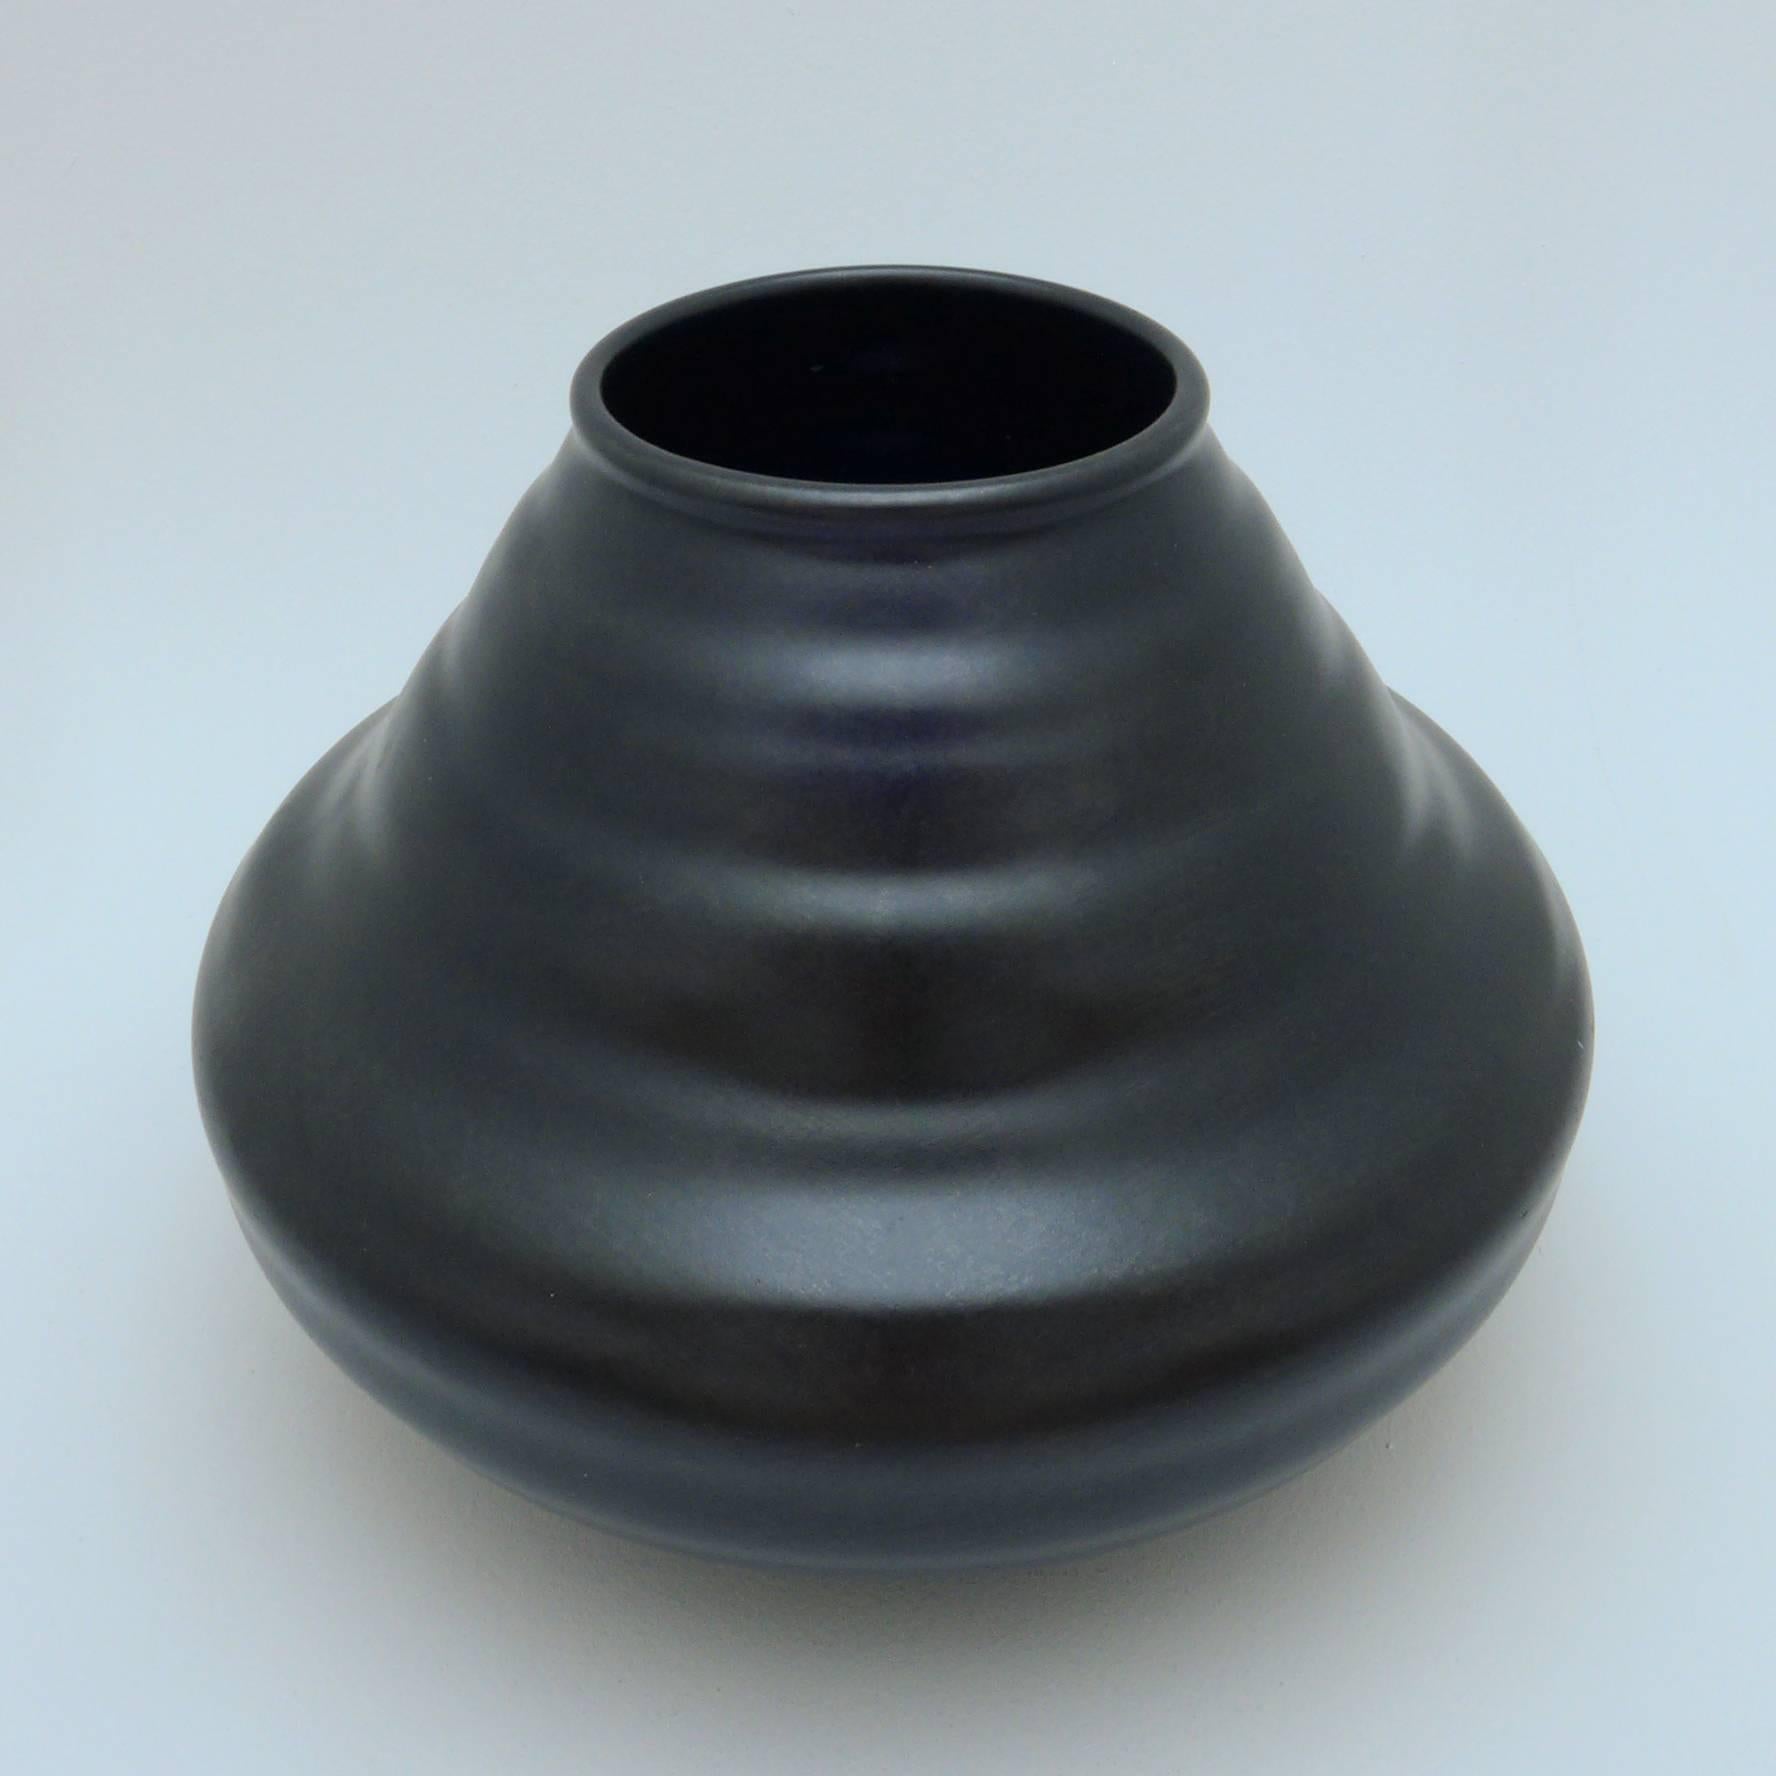 Gourd-shaped ceramic vase with black matte glaze produced by Dutch manufacturer Eskaf, circa 1930.